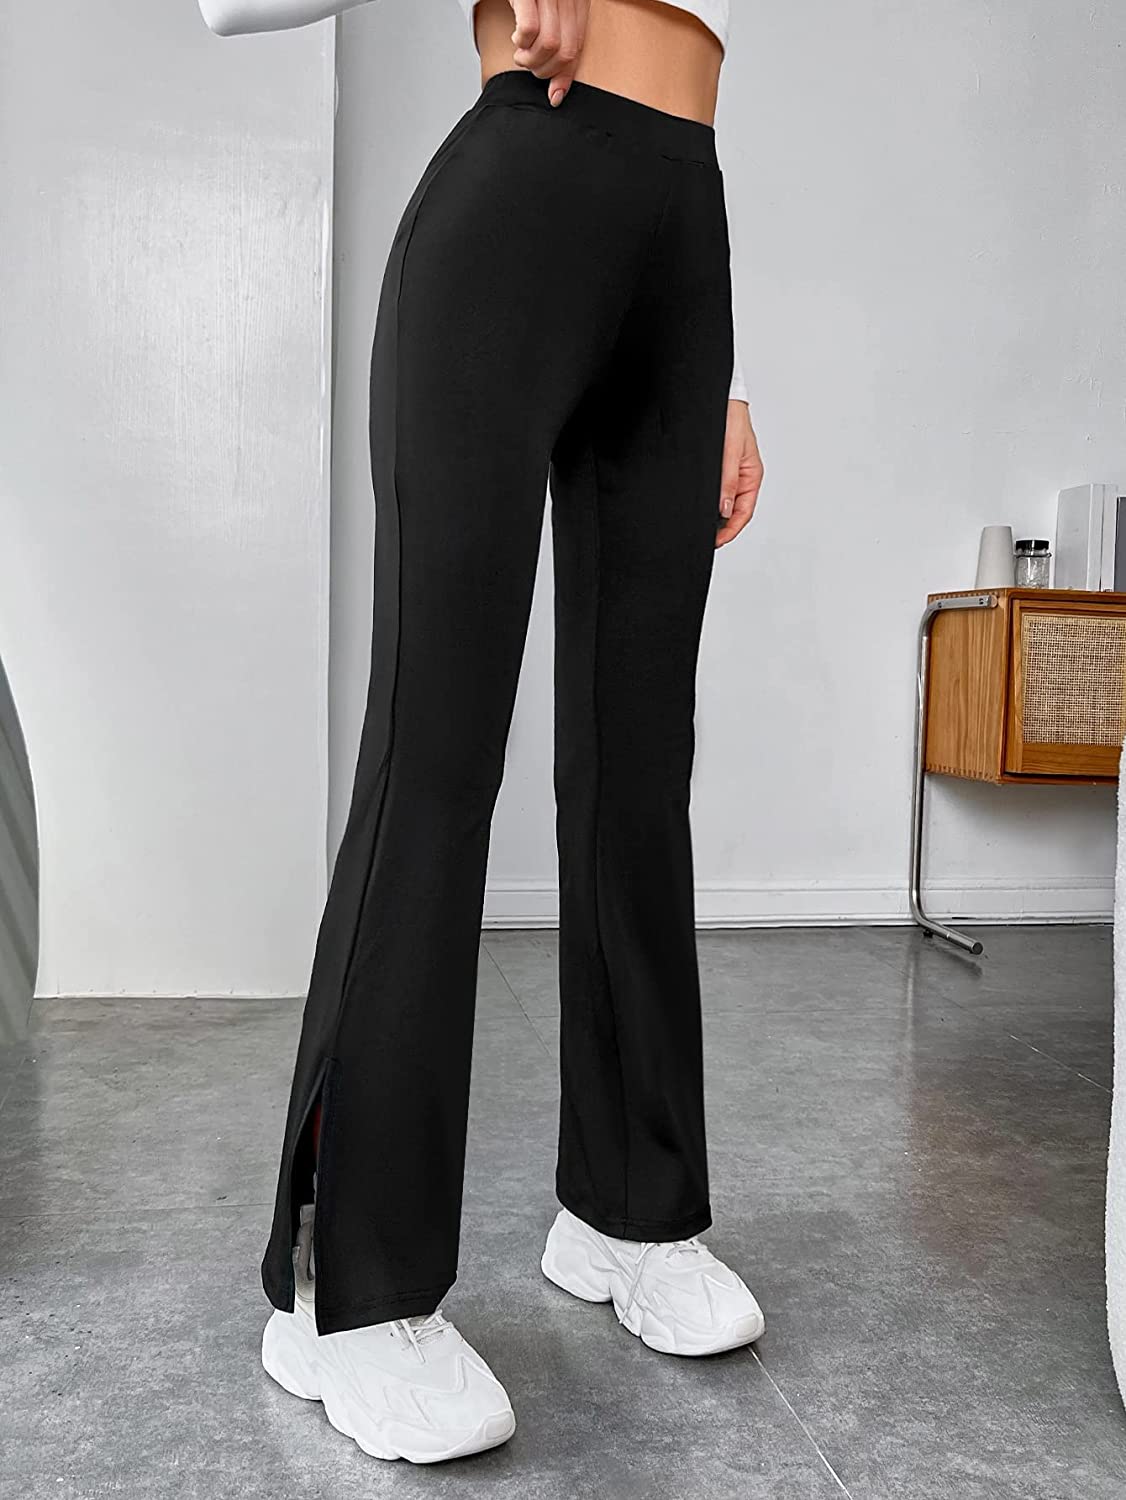 Buy TESTED Solid Black High Waist Split Hem Flare Leg Pants Trouser for  Women's & Girls, Trousers for Women, Pants for Women, Formal Pants for  Women